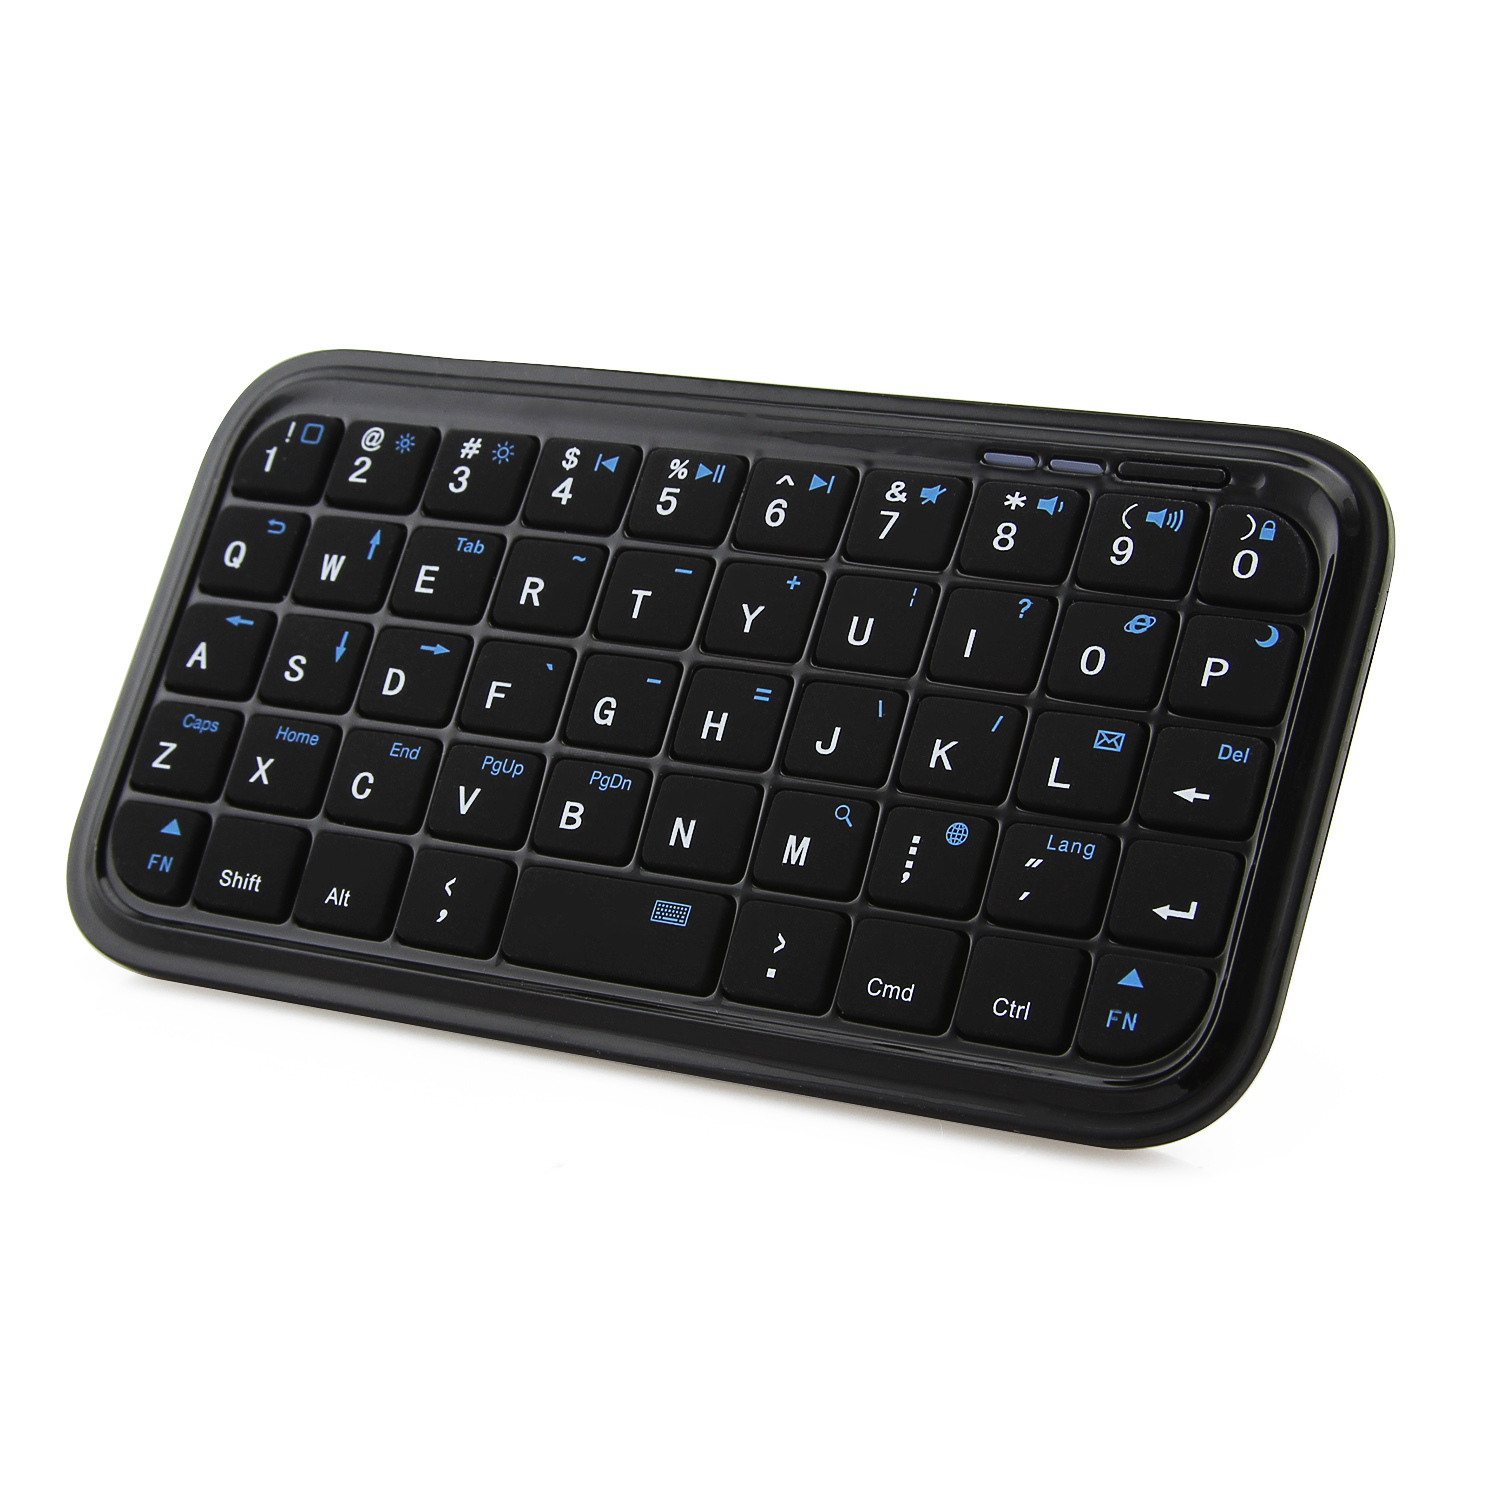 Bluetooth-Wireless-Mini-Keyboard-Slim-Black-Computer-Portable-Keypad-tanana-Kely-Ho an'ny-iPhone-Android-Smart-Phone (5)